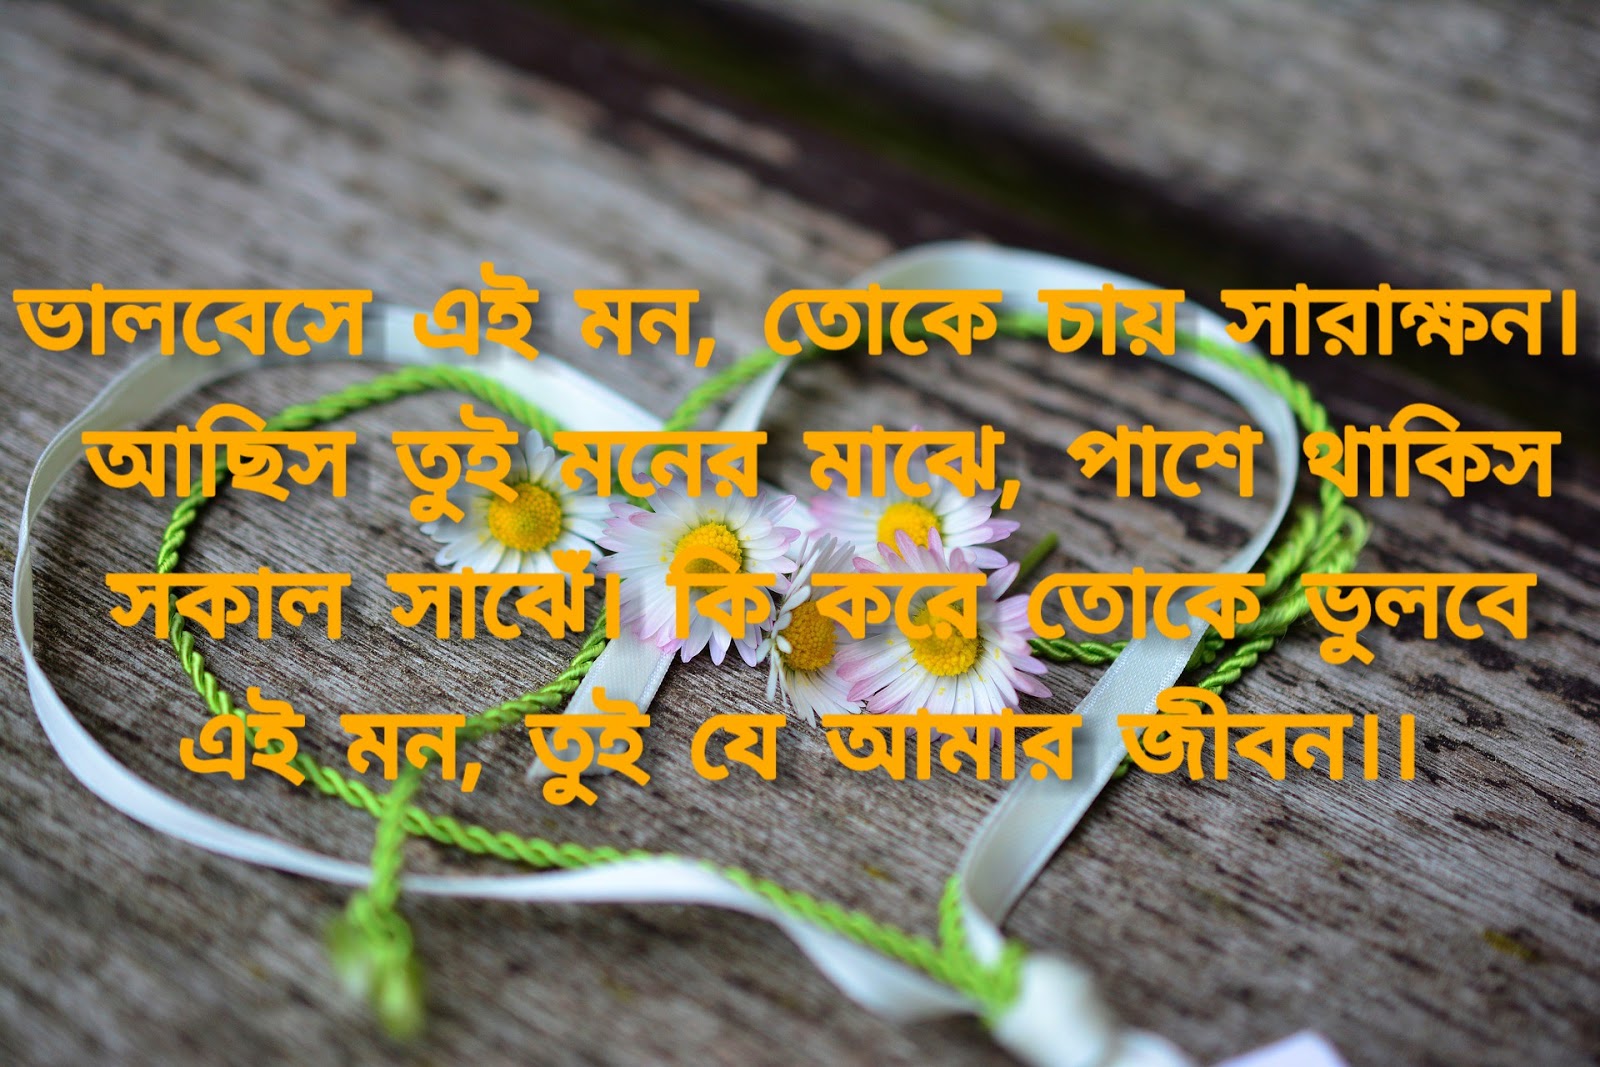 Bangla letter written love Romantic love